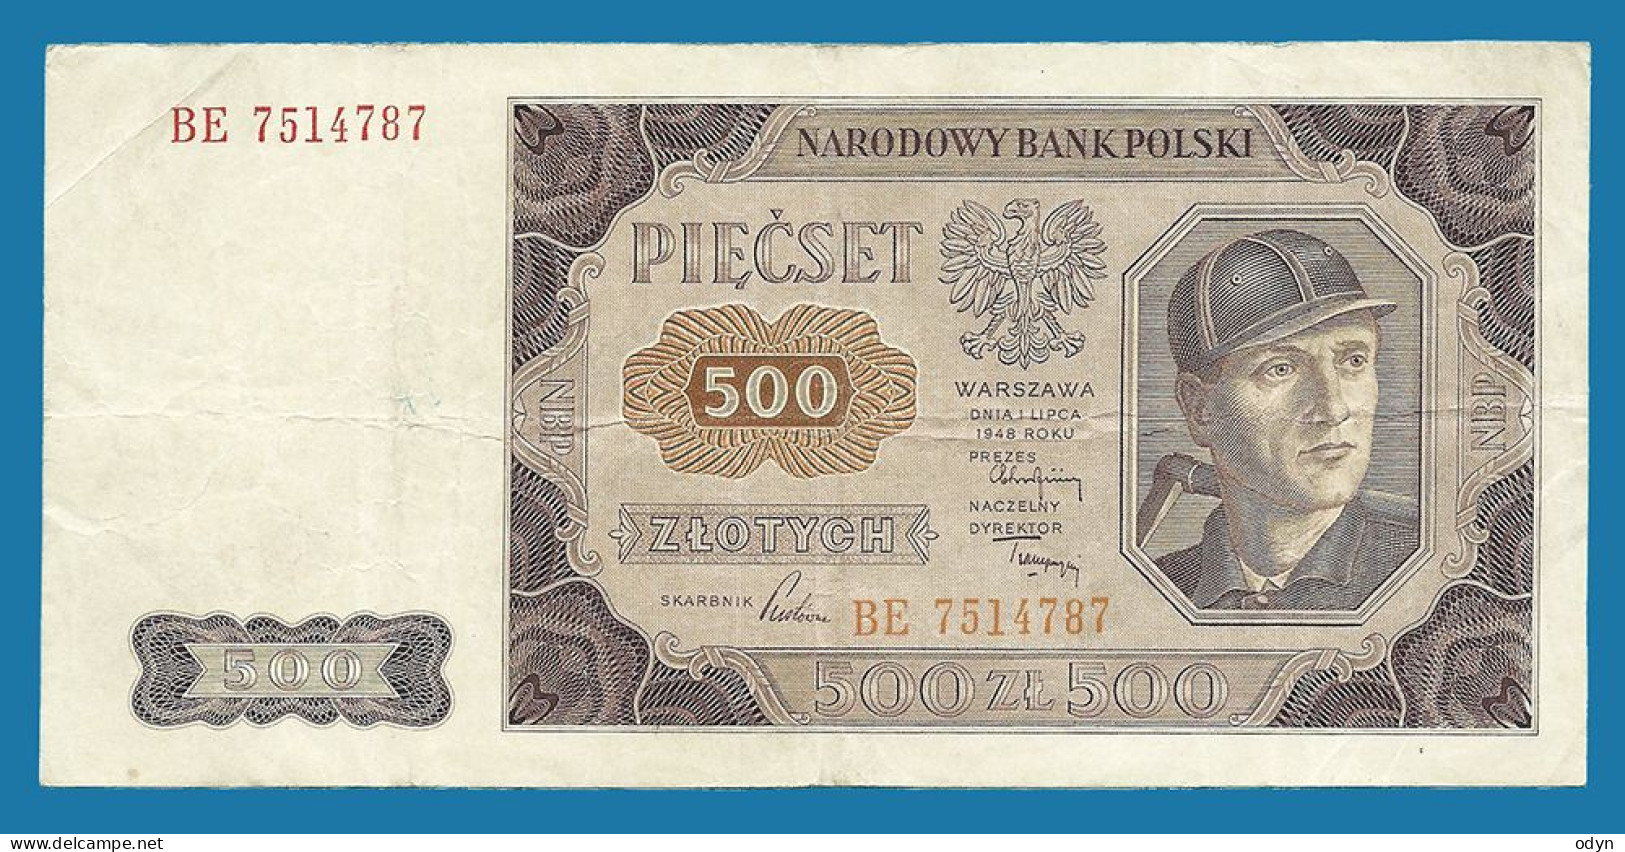 Poland, 1948, 500 Zlotych, Ser. BE 7514787, VF - Pologne